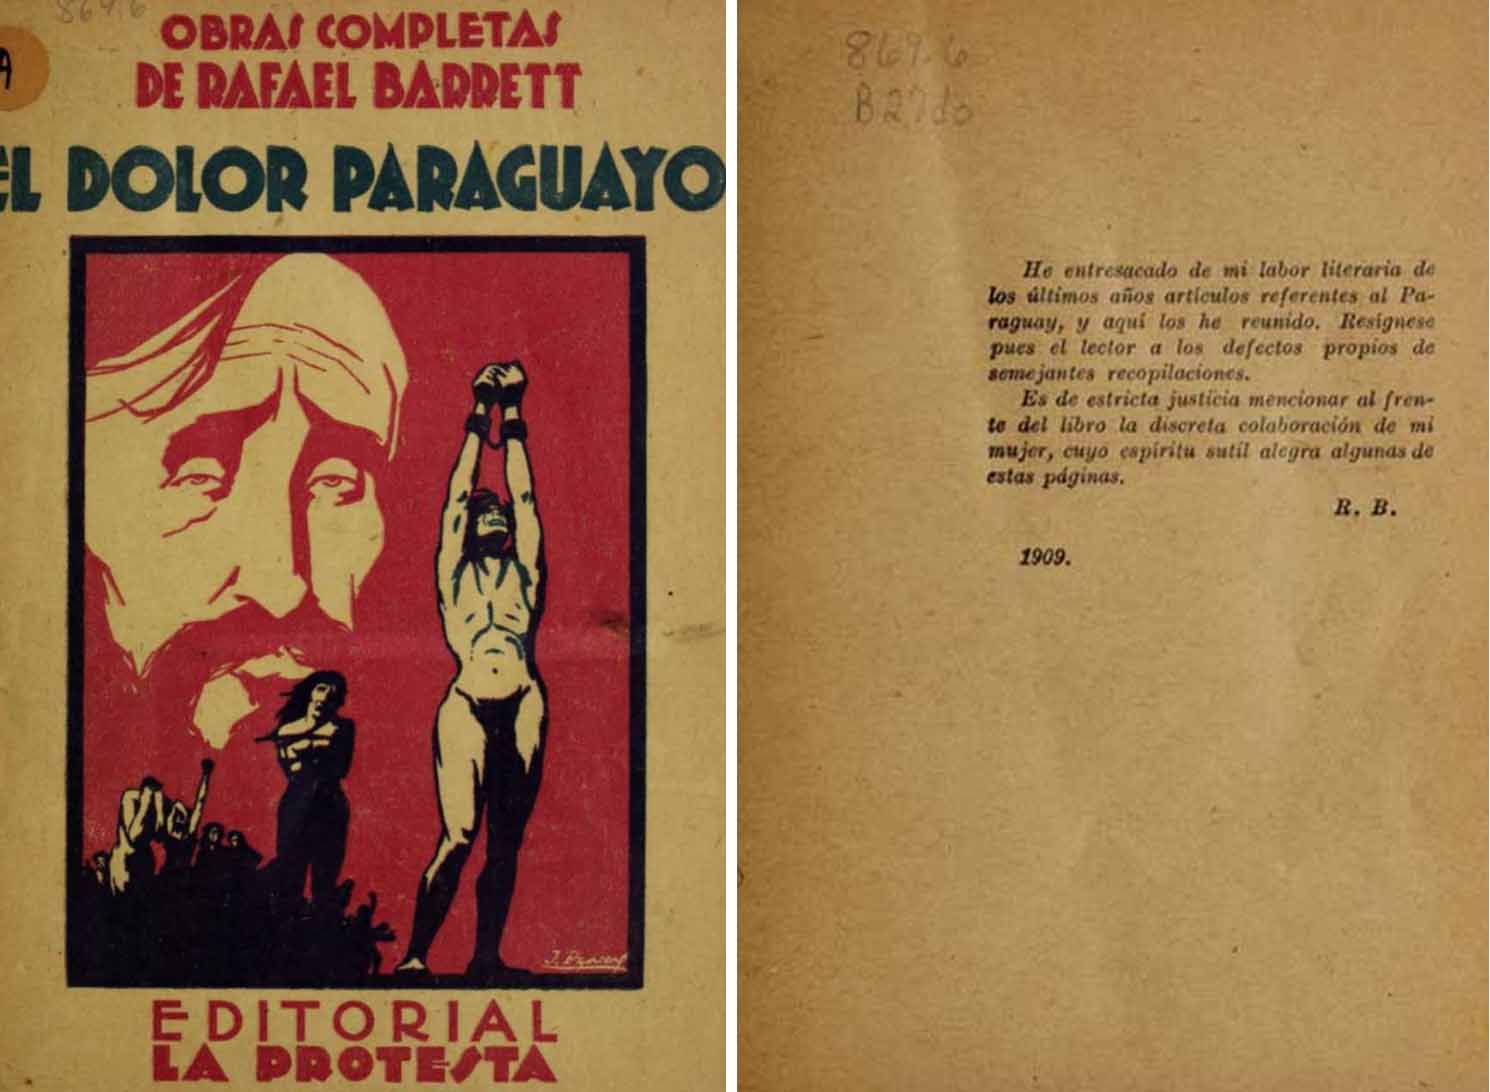 El dolor paraguayo, primera edición, Editorial La Protesta, Buenos Aires, 1909.